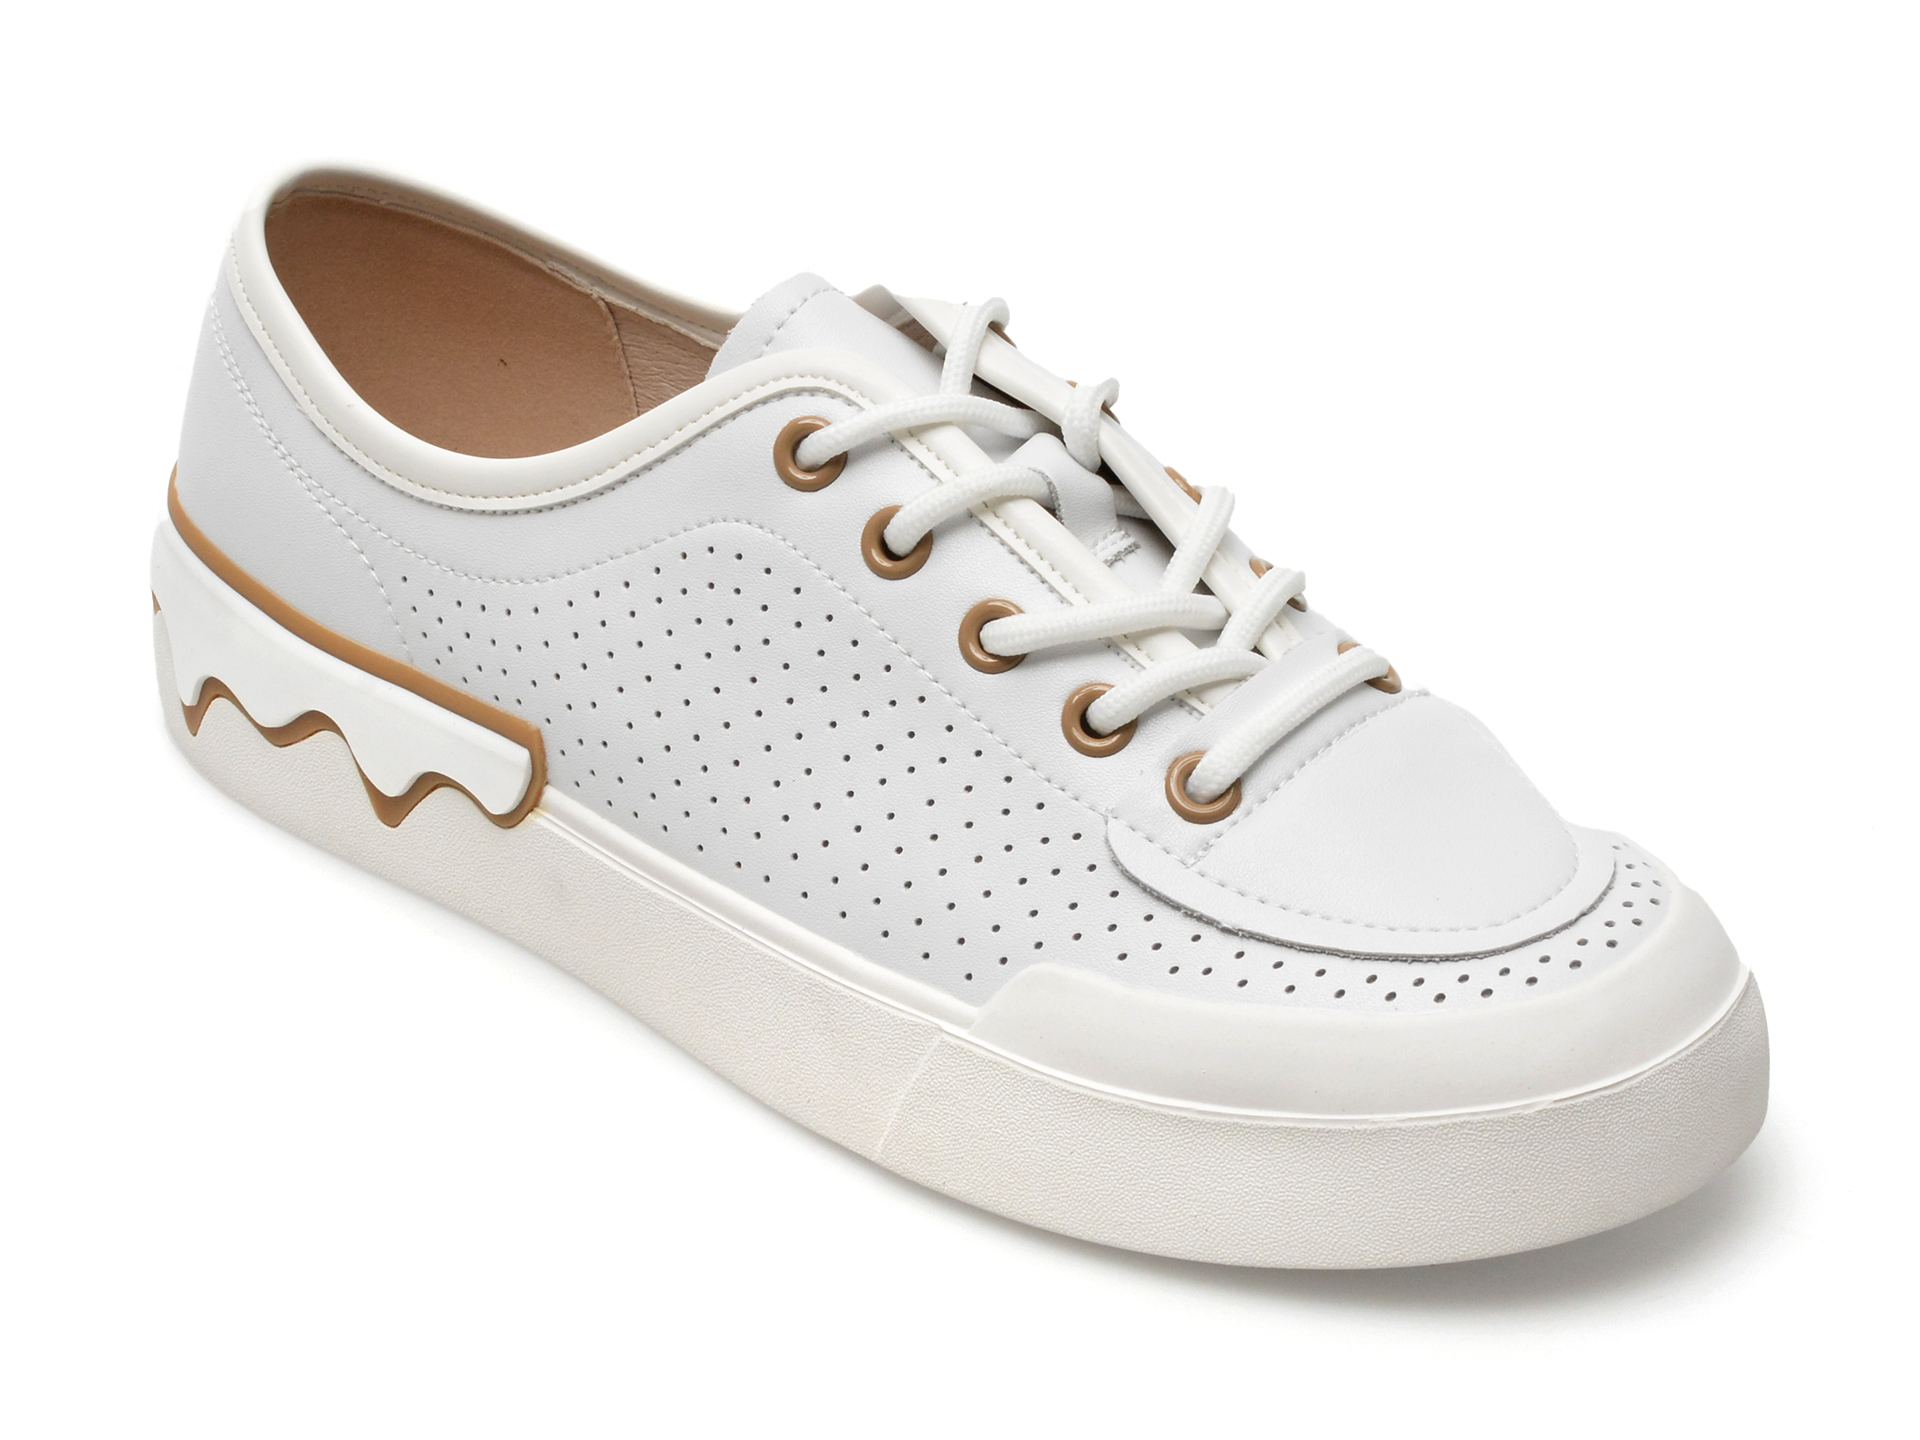 Pantofi GRYXX albi, KD562, din piele naturala Answear 2023-05-31